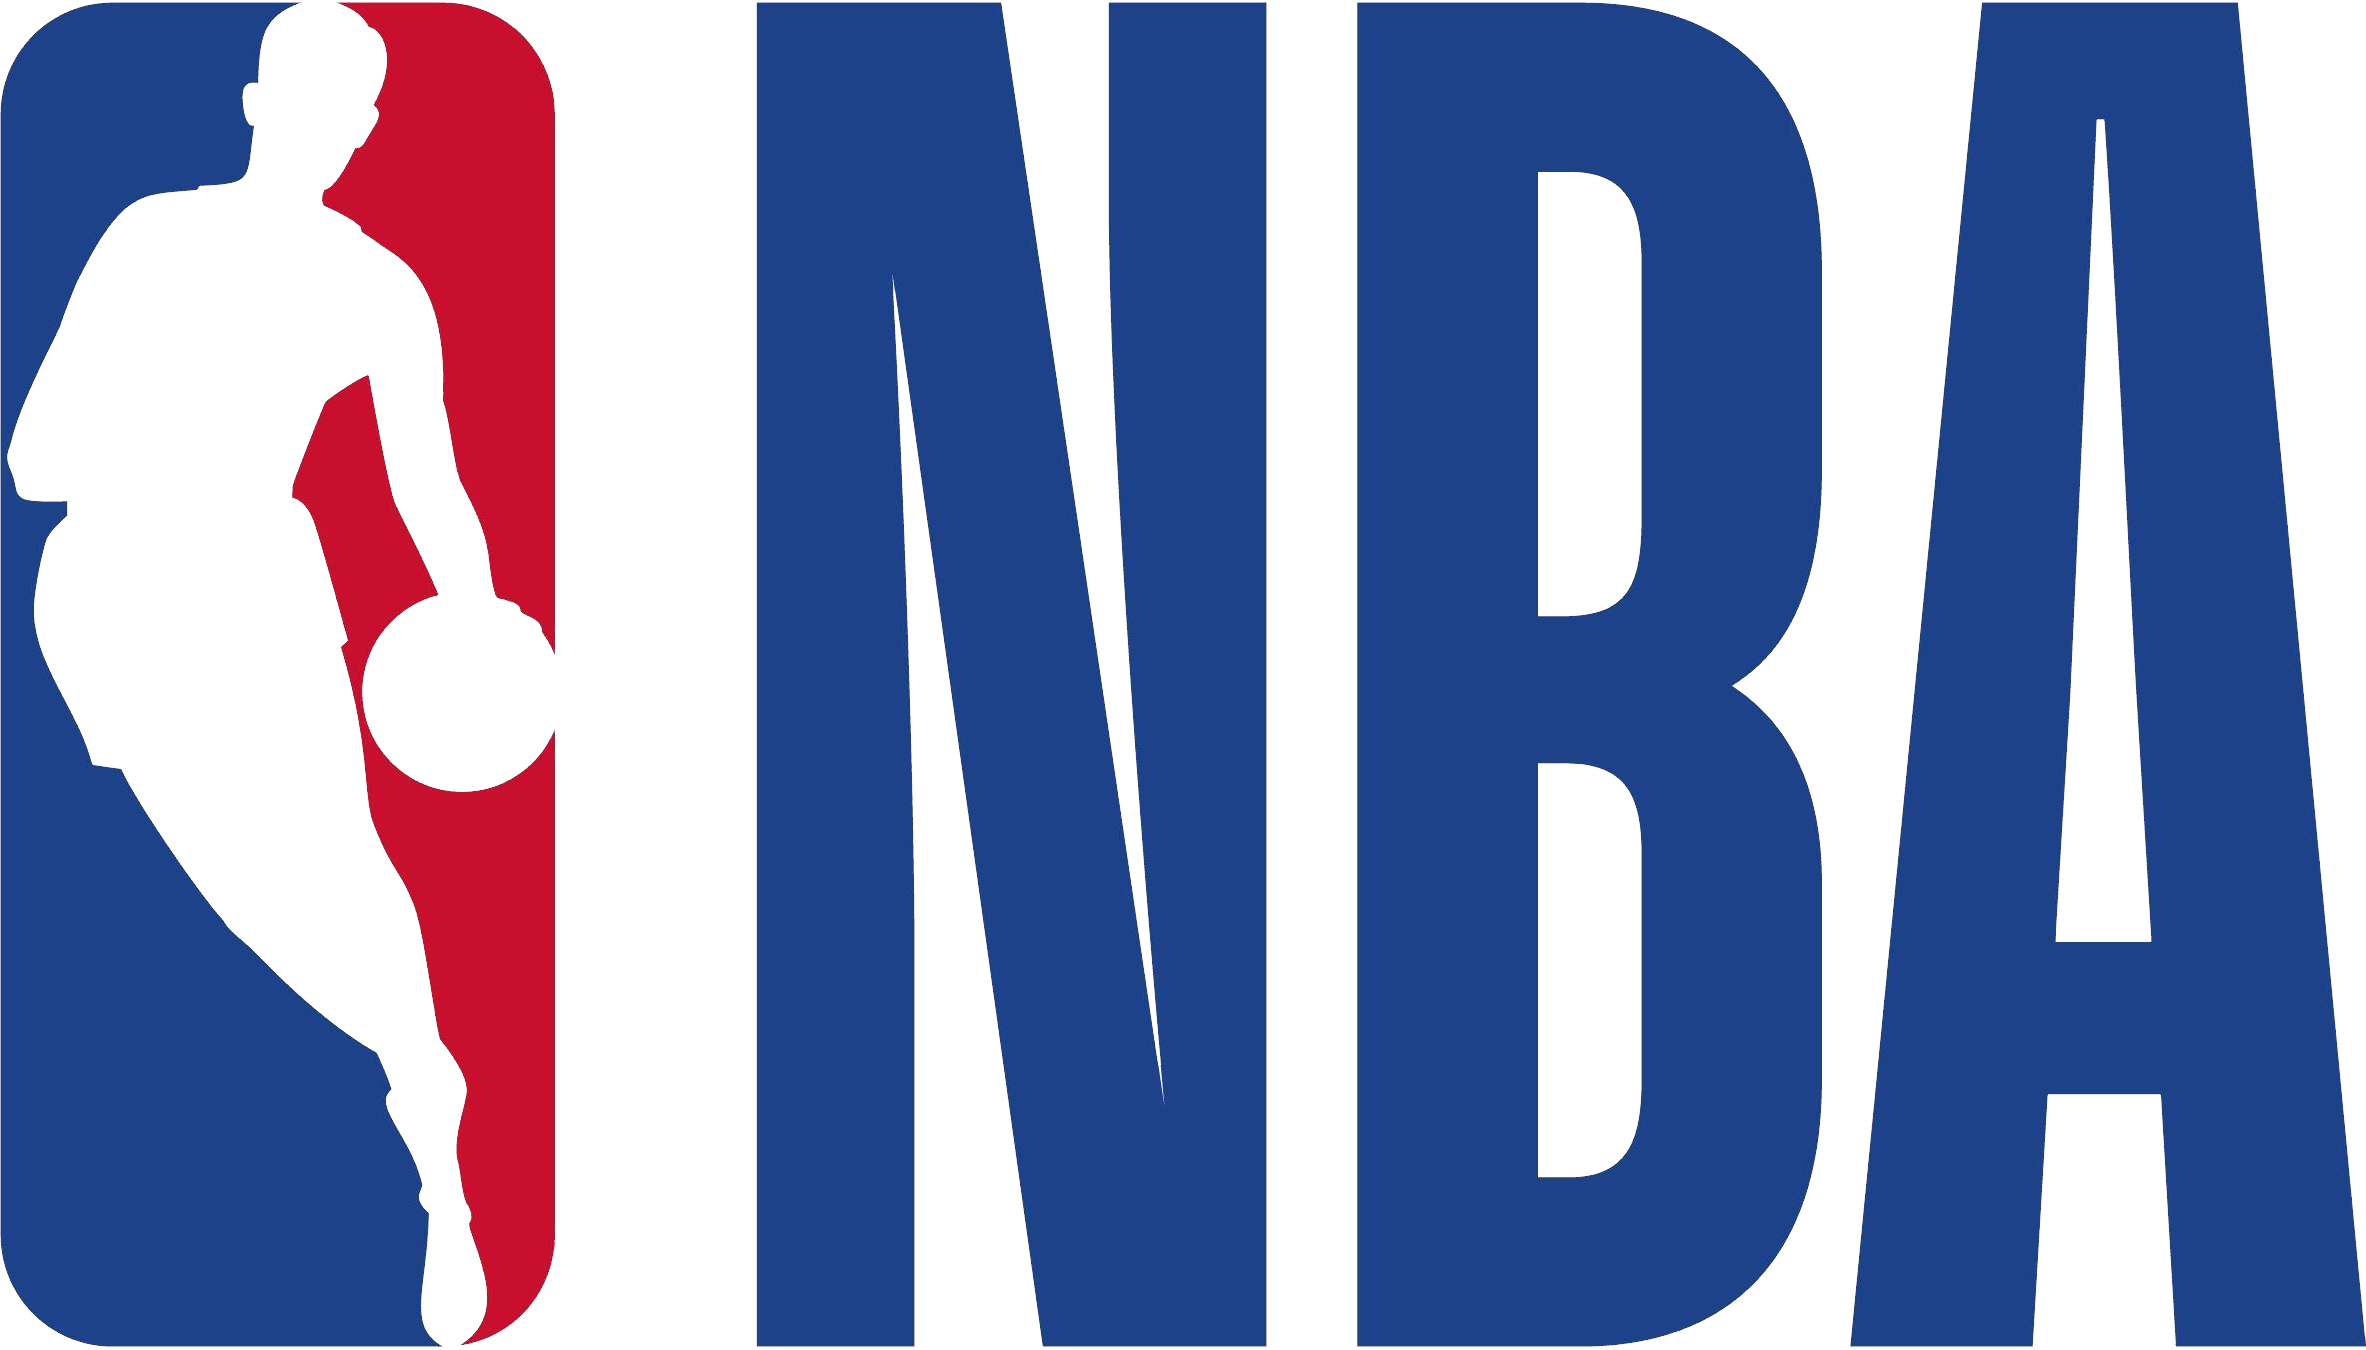 Logotipo da NBA